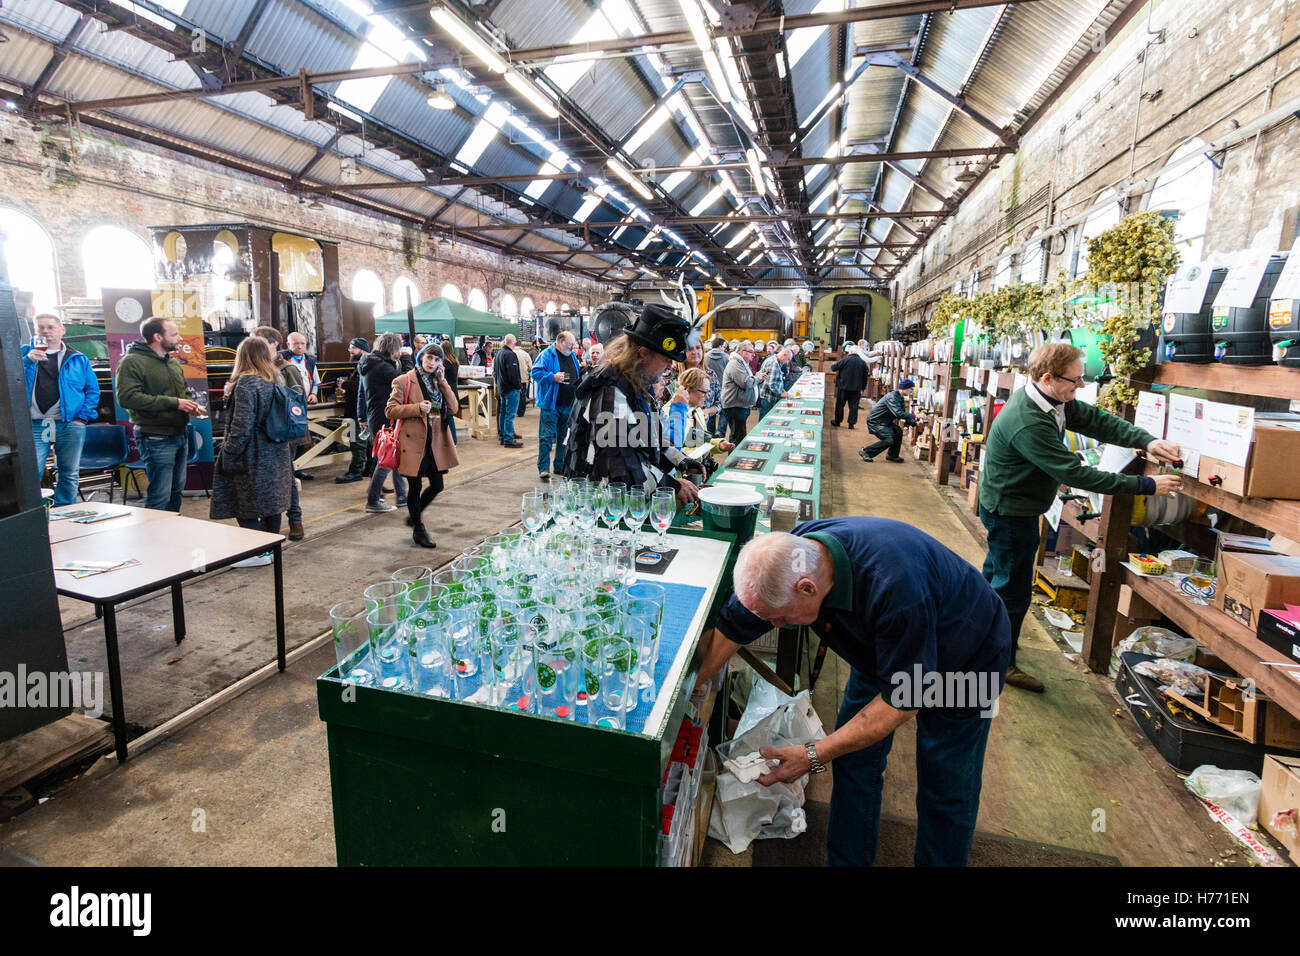 CAMRA Bierfestival in alten Lokomotive in Tunbridge Wells, Großbritannien beleuchten. Menschen Auswahl Biere aus verschiedenen Fässer, Bierfässer, hinter einer langen Tresen. Stockfoto